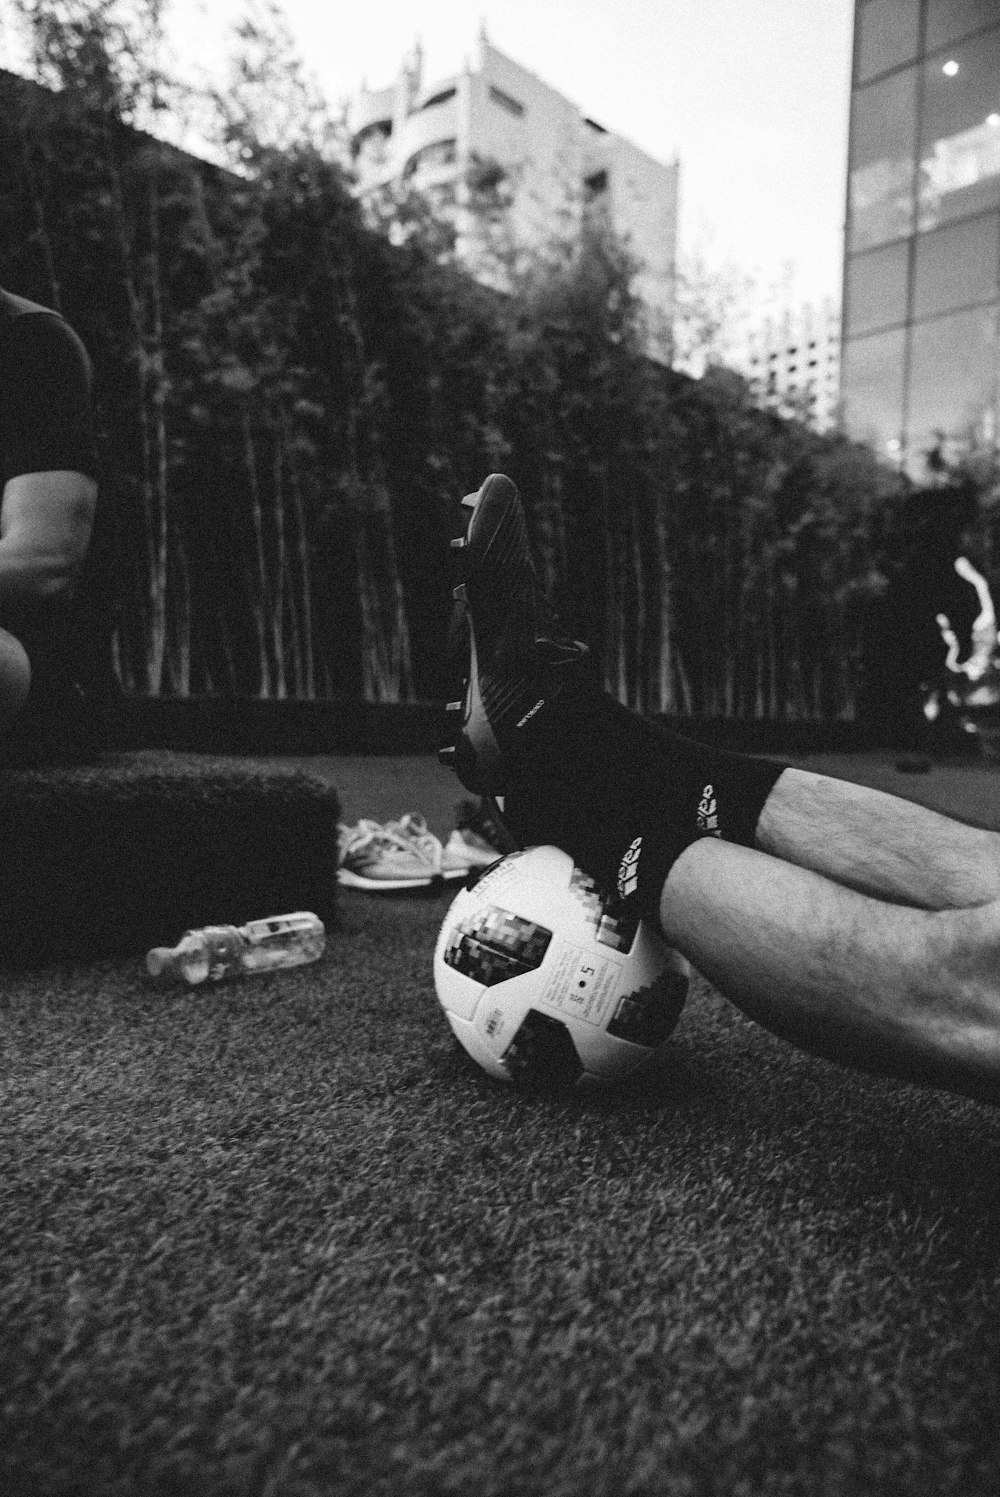 foto em escala de cinza dos pés de uma pessoa em uma bola de futebol